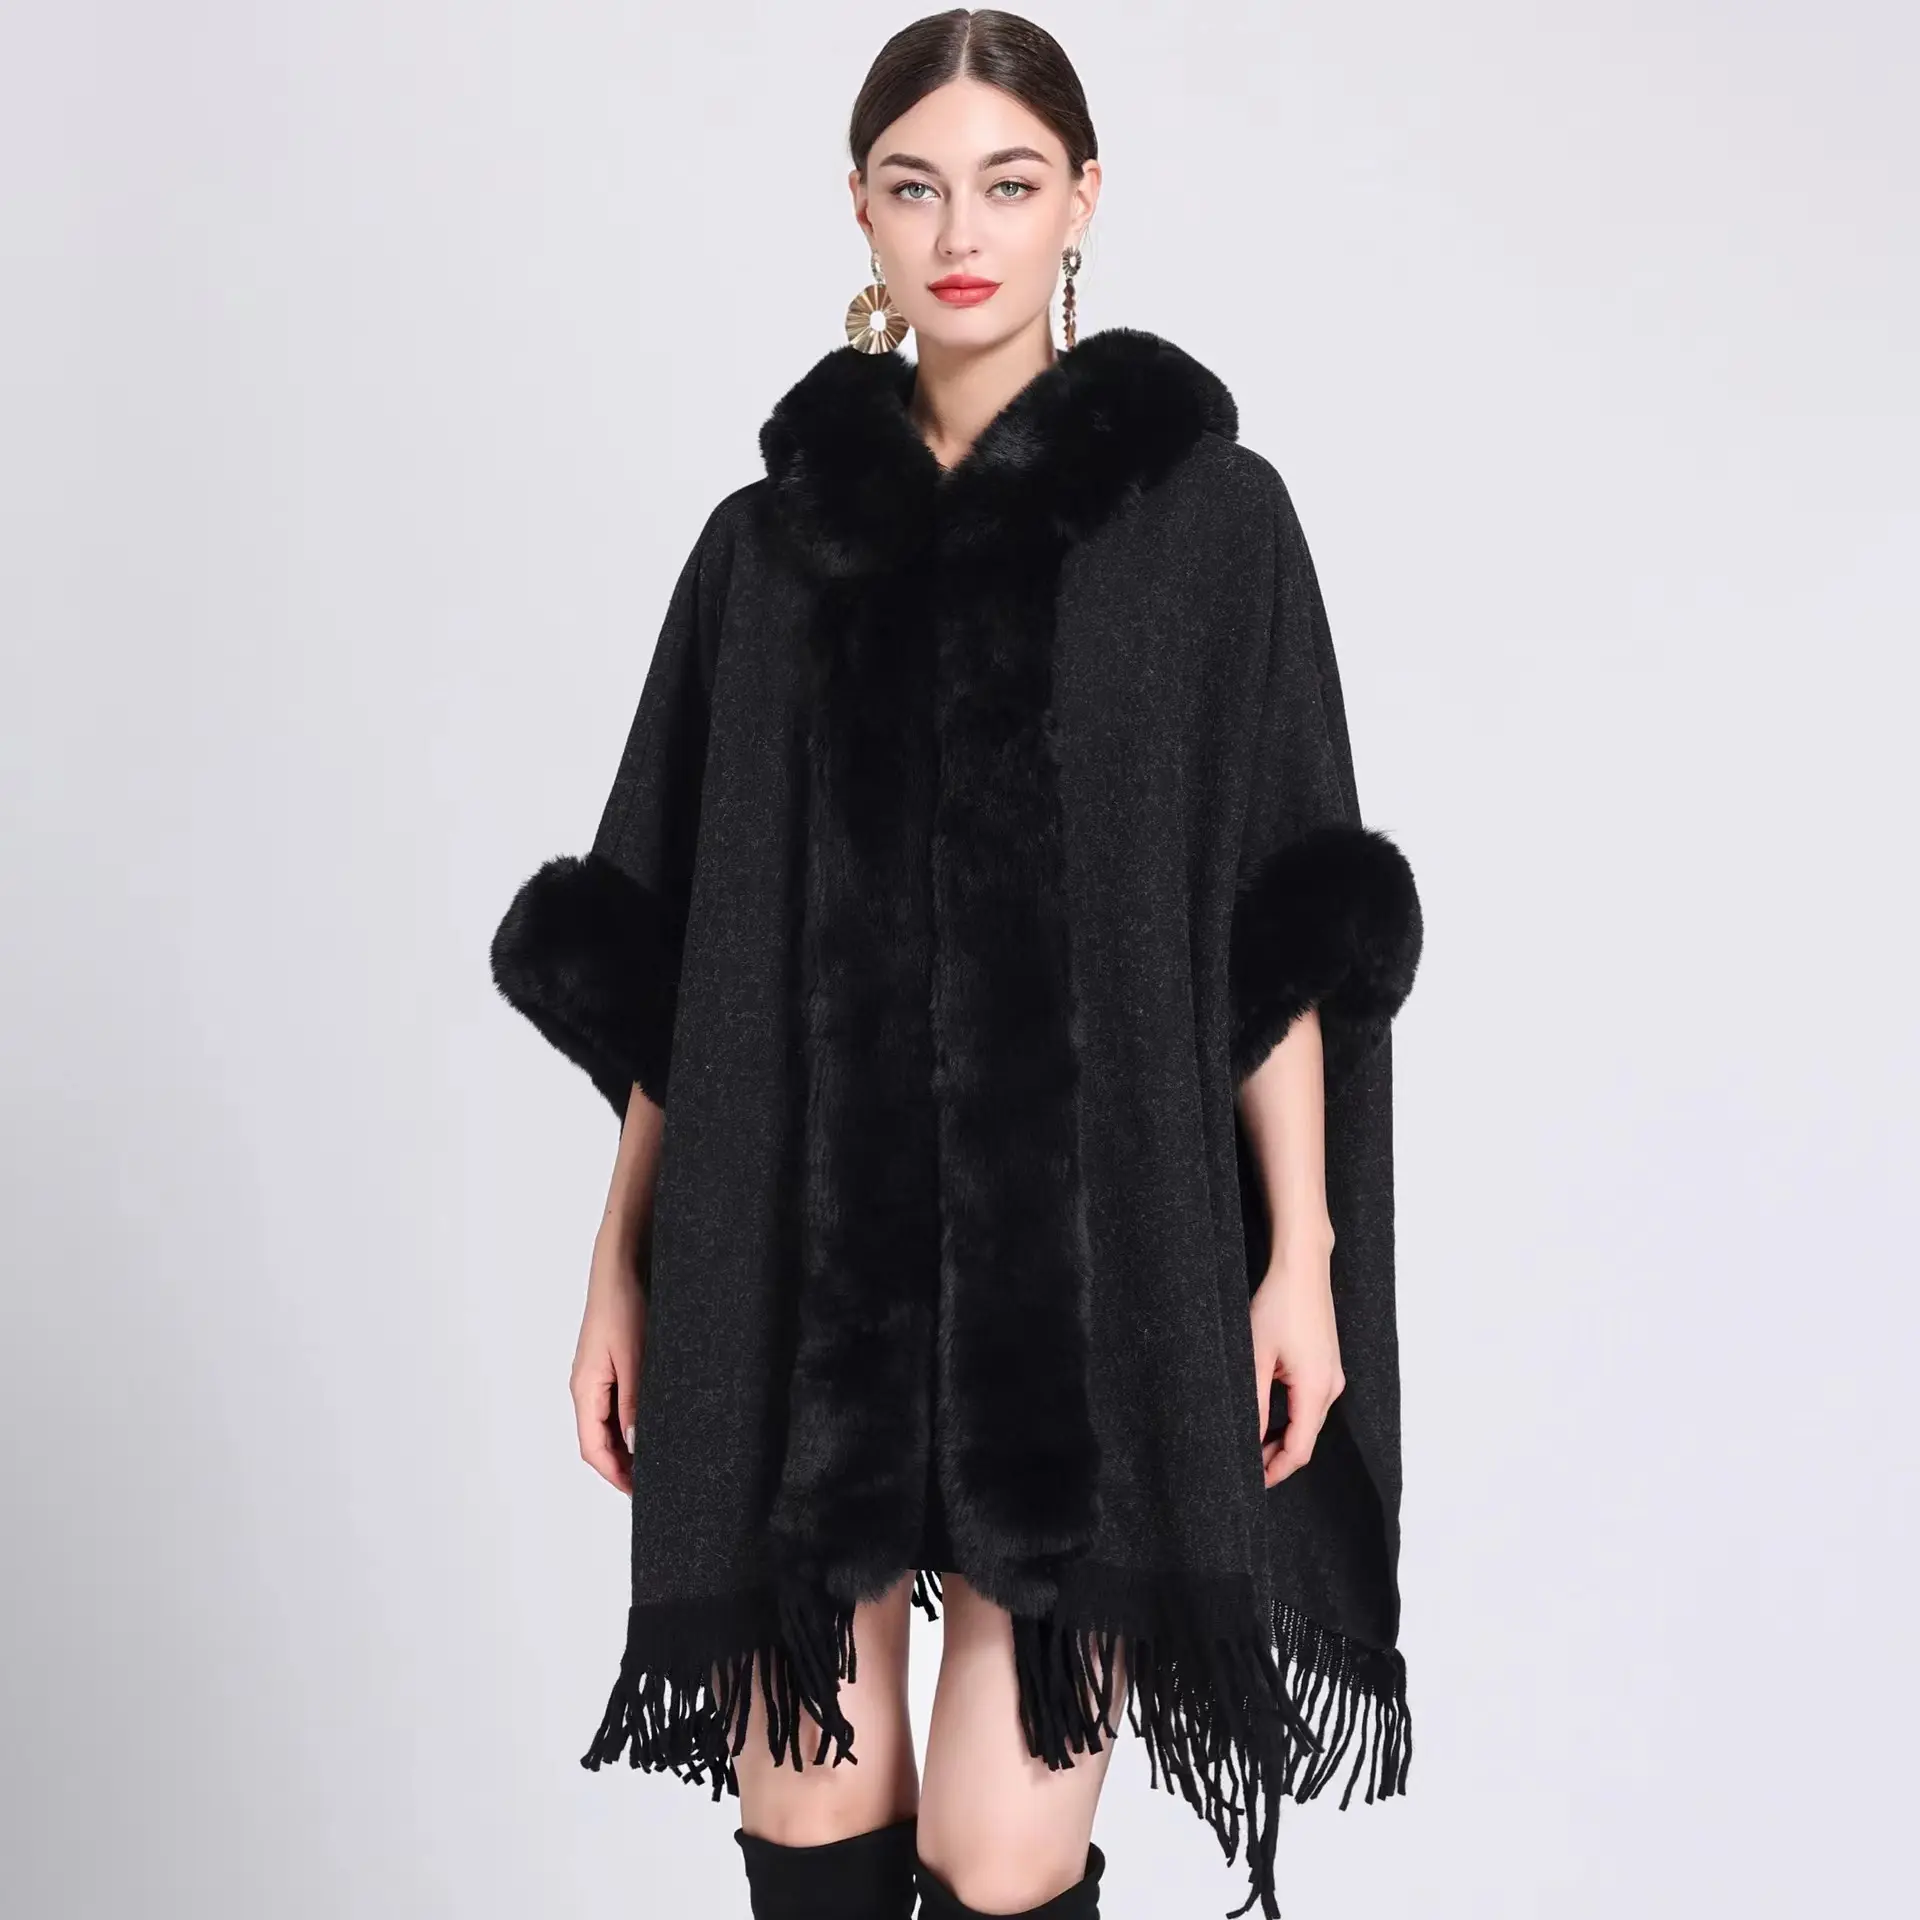 Casaco grande de lã com capuz e gola alta, casaco estilo preguiçoso, chaleco para mulheres, novidade outono/inverno 2023